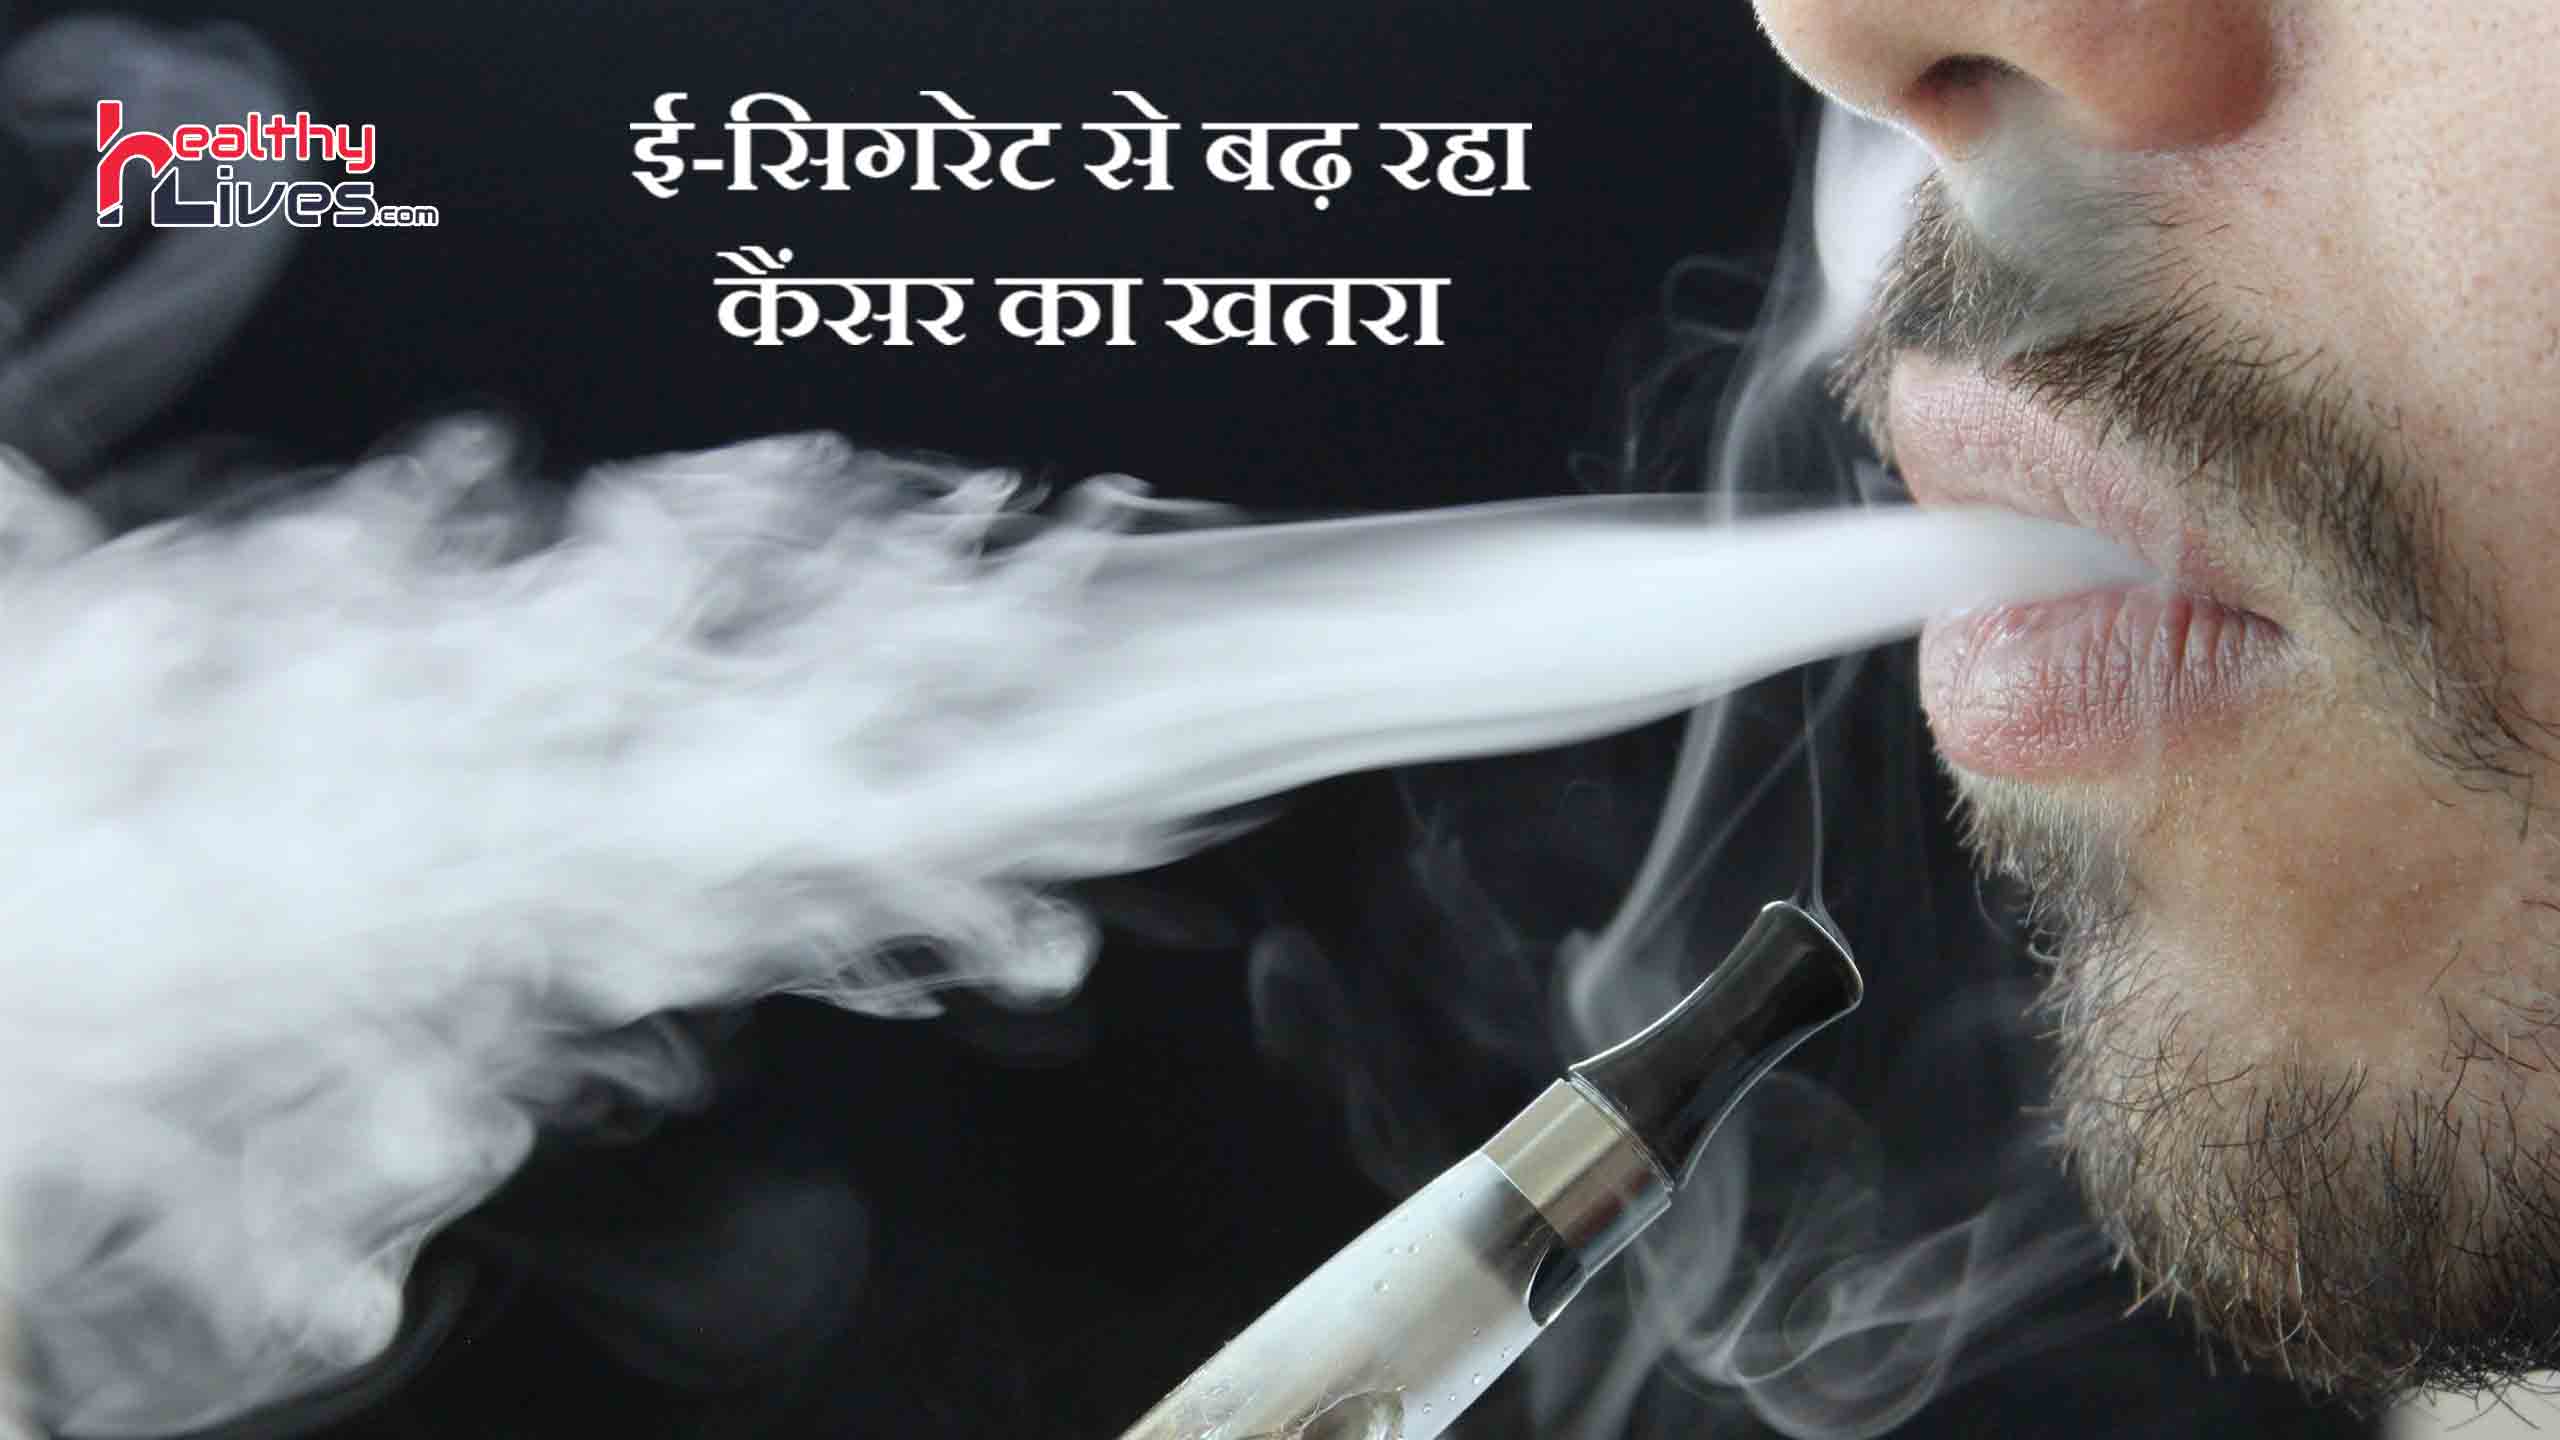 E Cigarette से हो सकता है फेफड़ों और दिमाग को नुकसान, रहे सावधान!